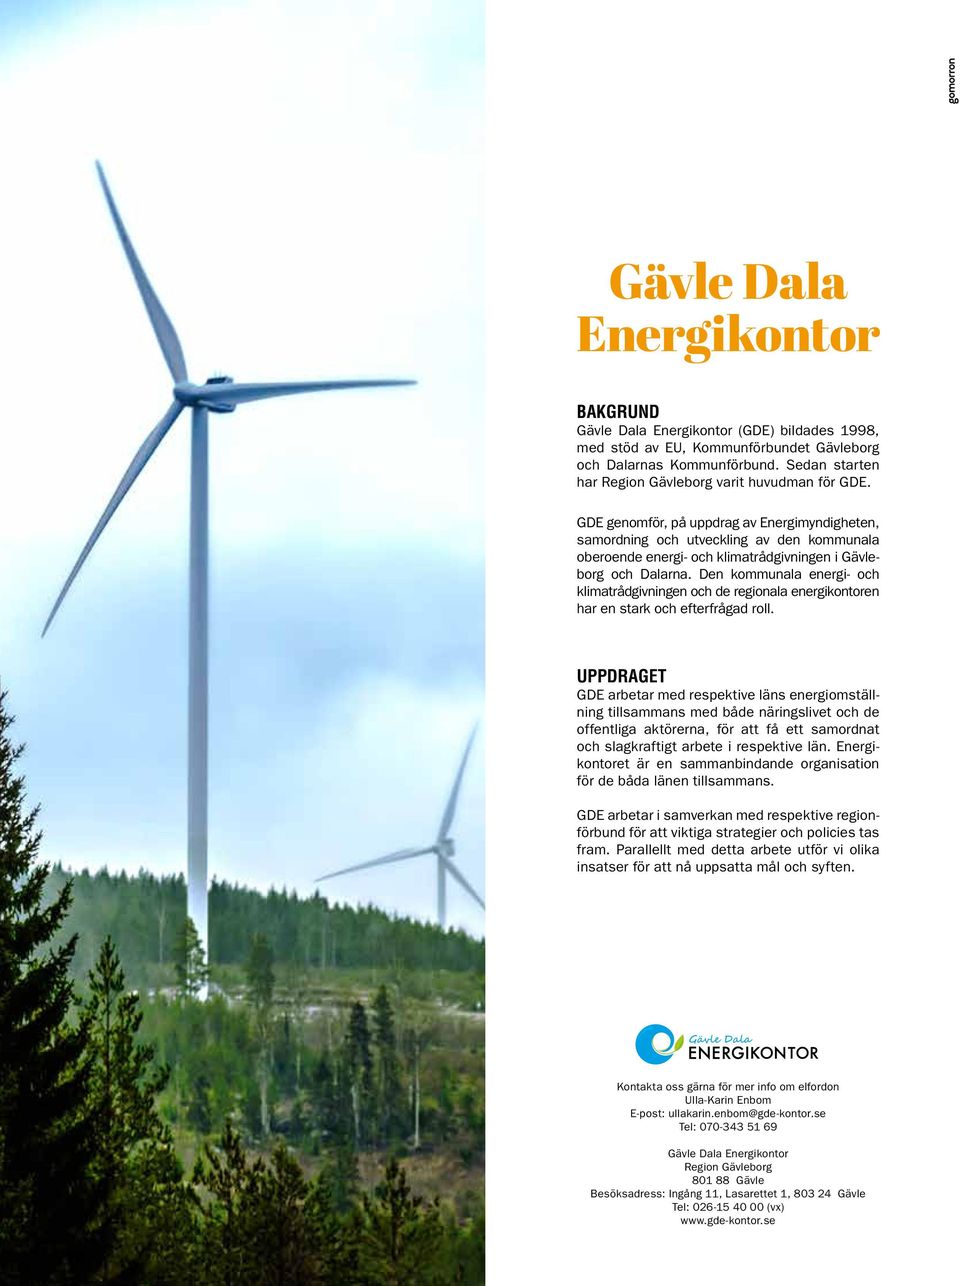 GDE genomför, på uppdrag av Energimyndigheten, samordning och utveckling av den kommunala oberoende energi- och klimatrådgivningen i Gävleborg och Dalarna.